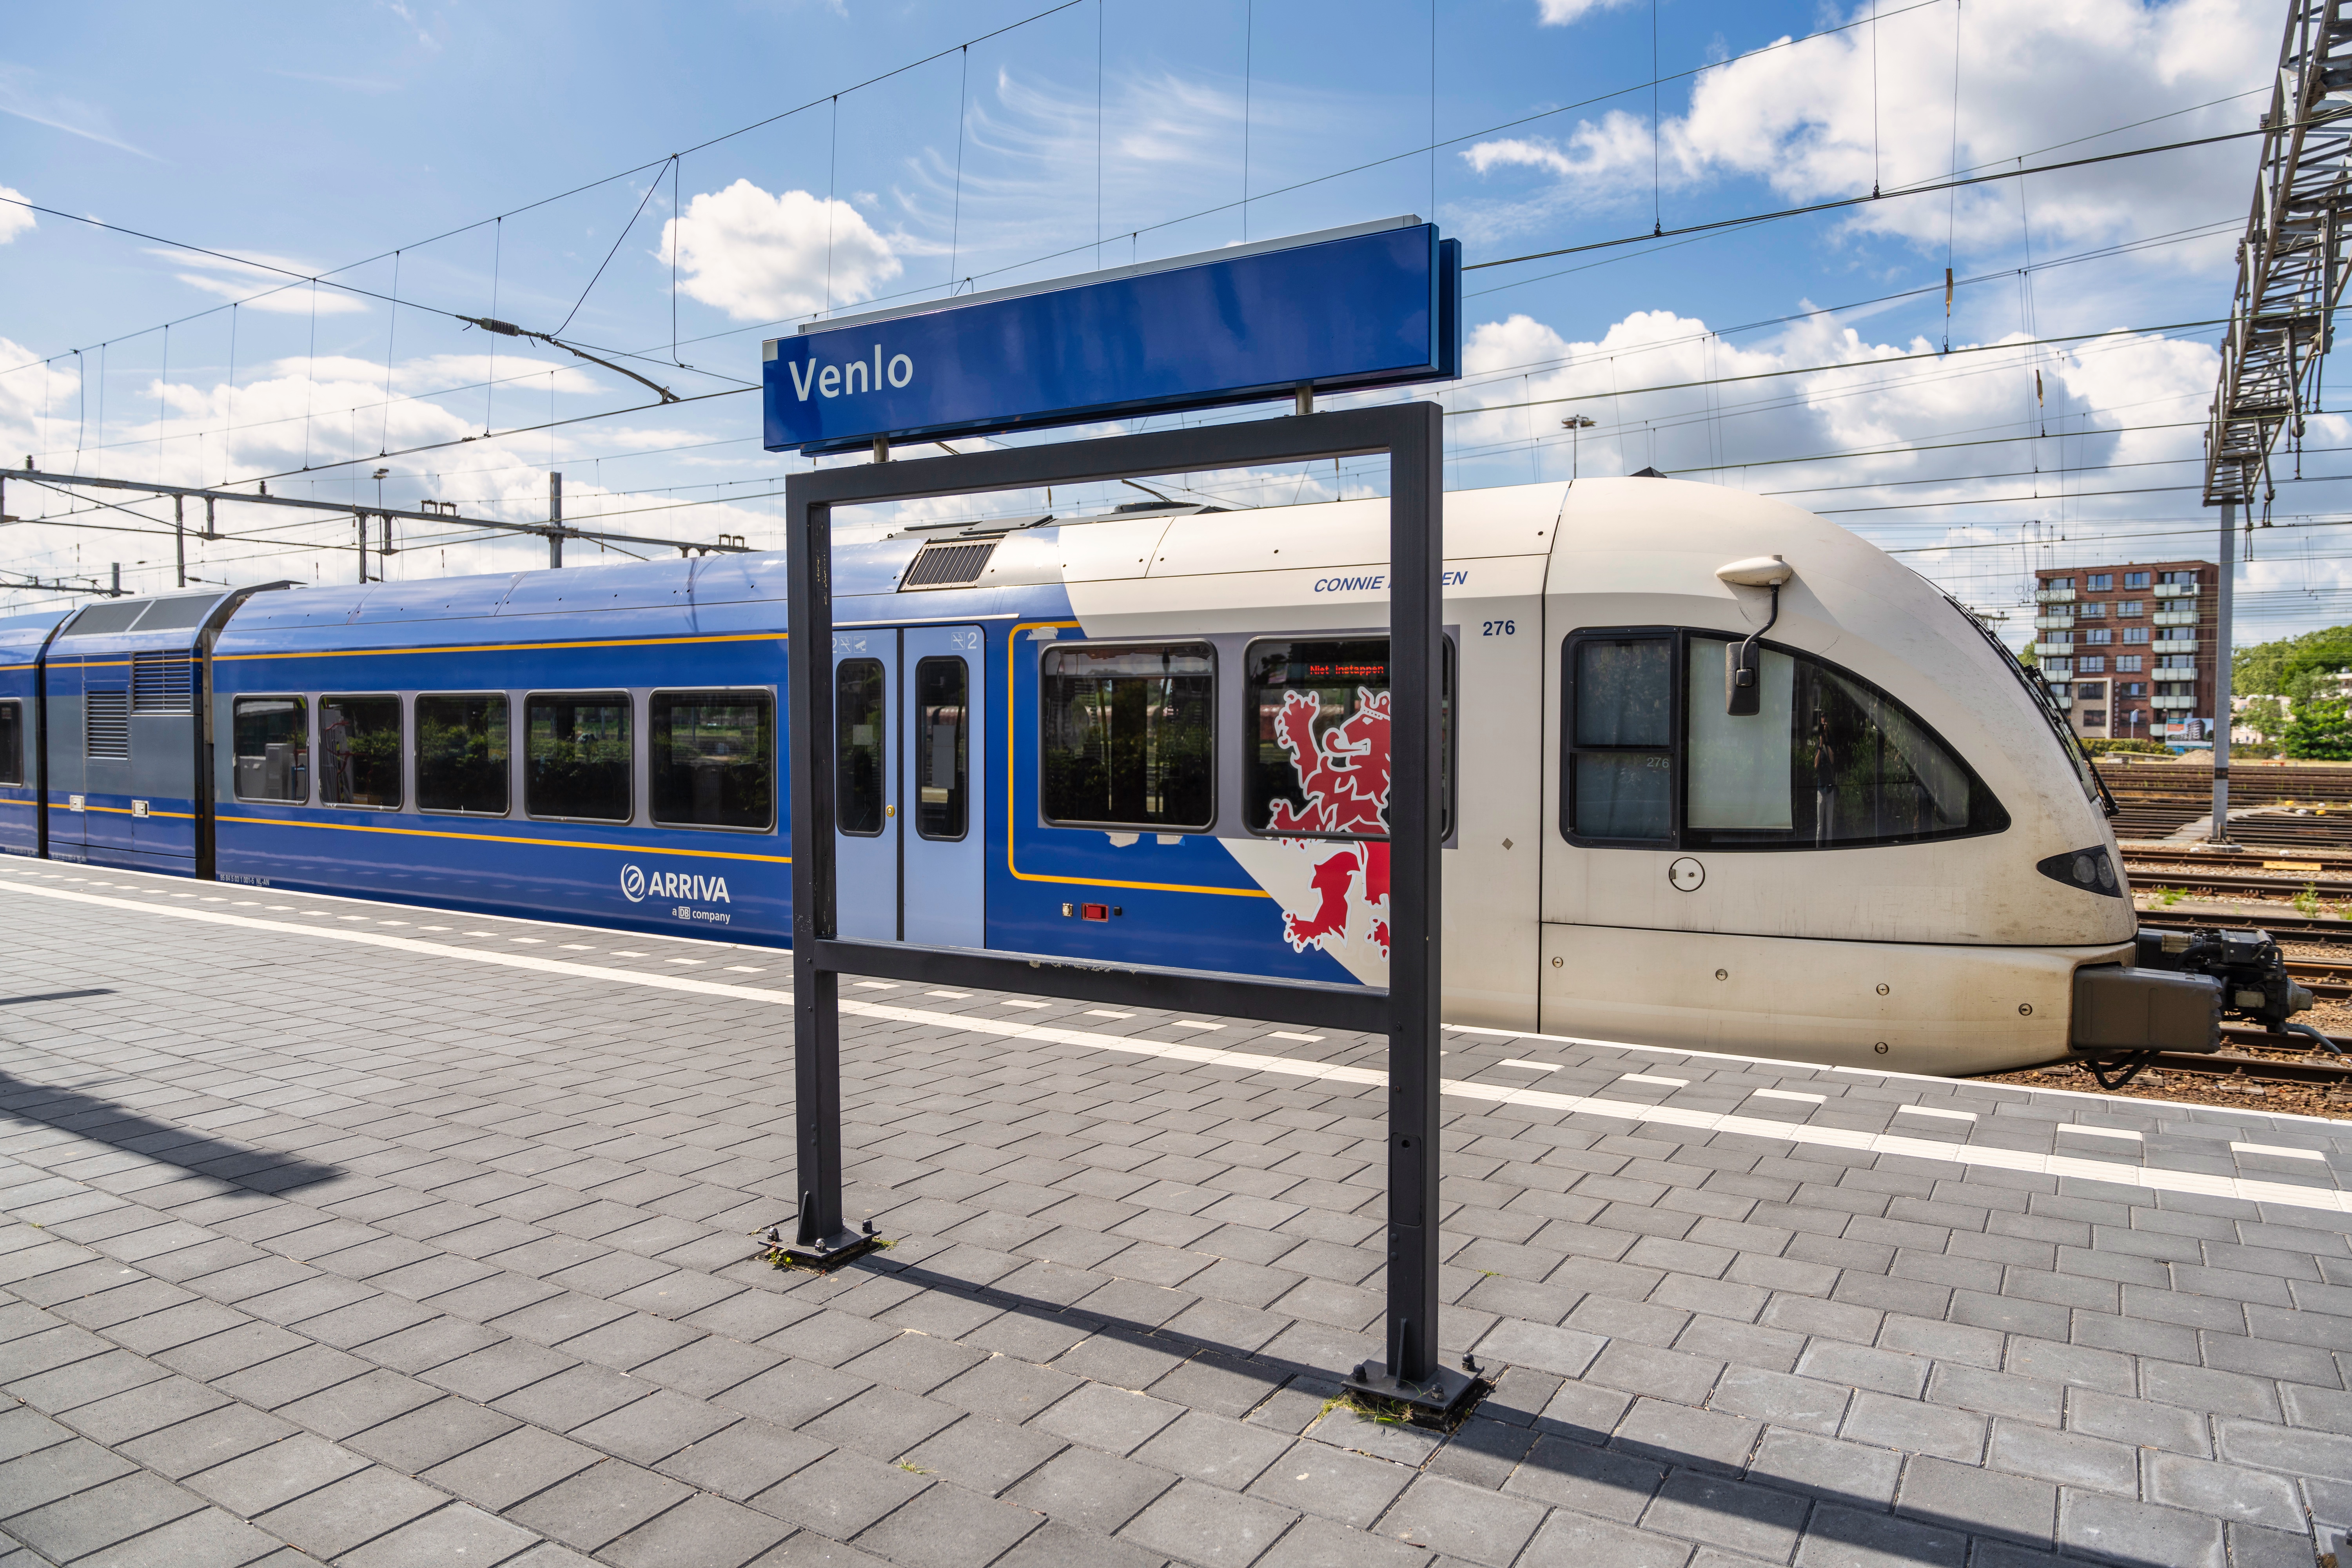 Trein van Arriva staat aan perron van station Venlo.